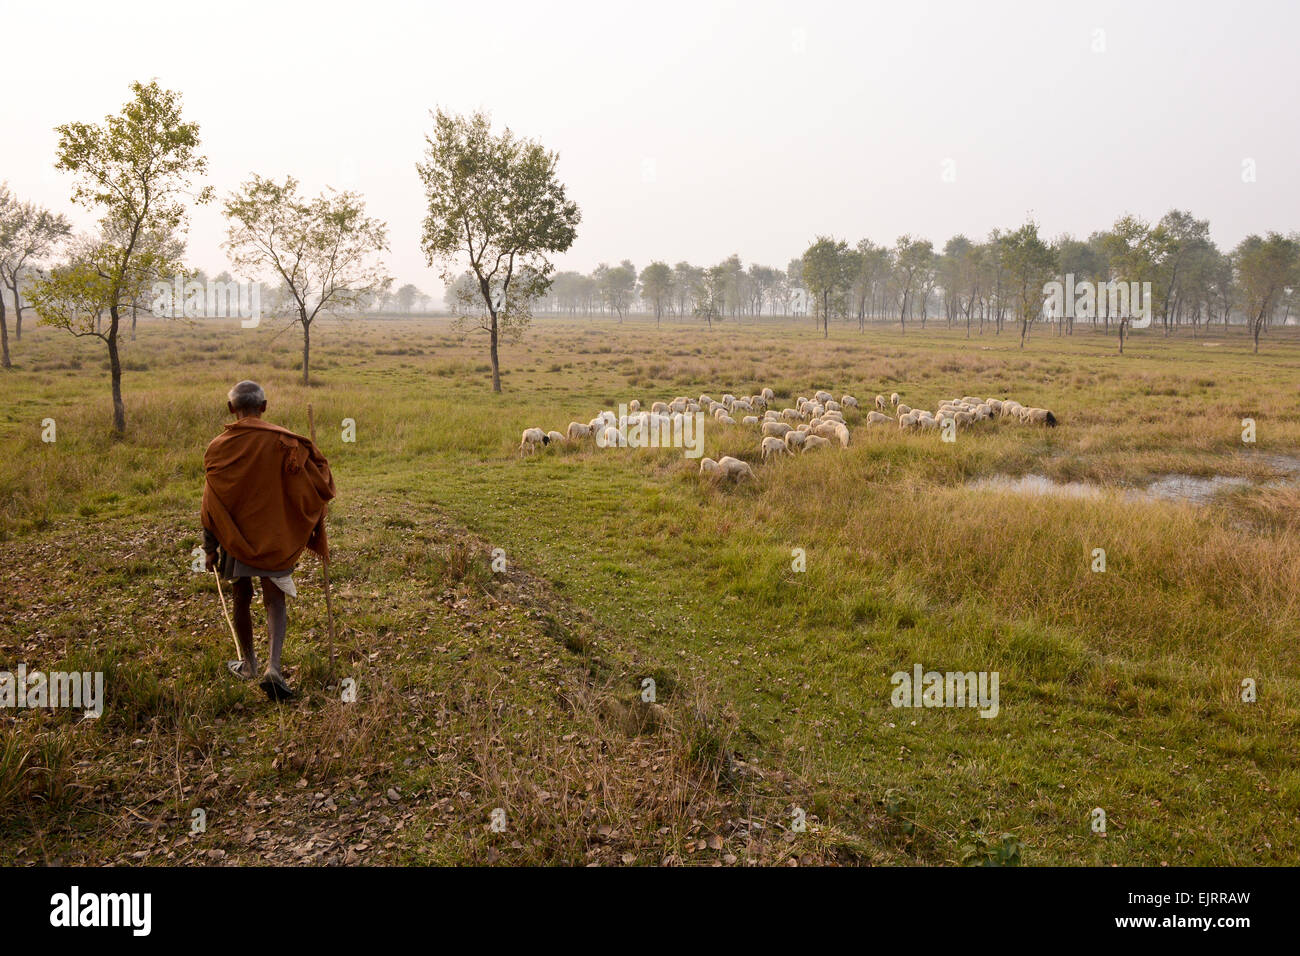 A shepherd in Lumbini, the place of Buddha's birth. Stock Photo